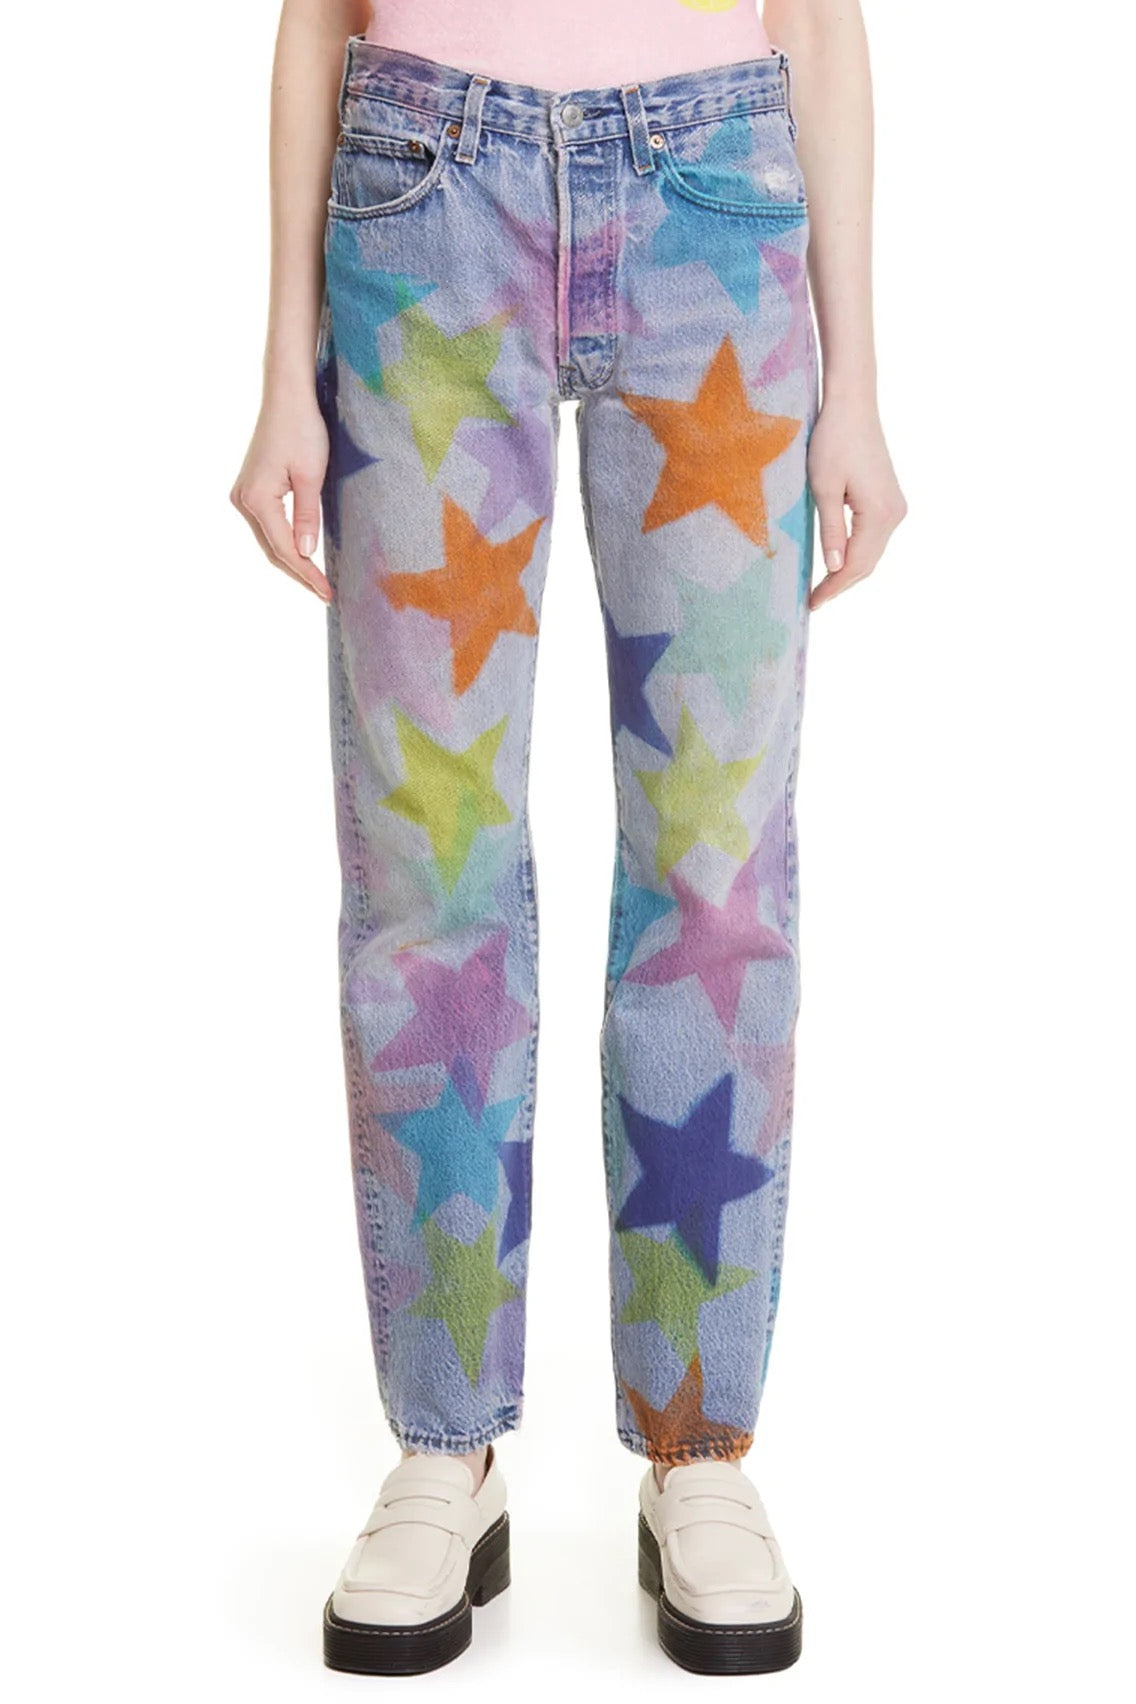 Collina Strada- Levi's 501s Star Jeans: Multi